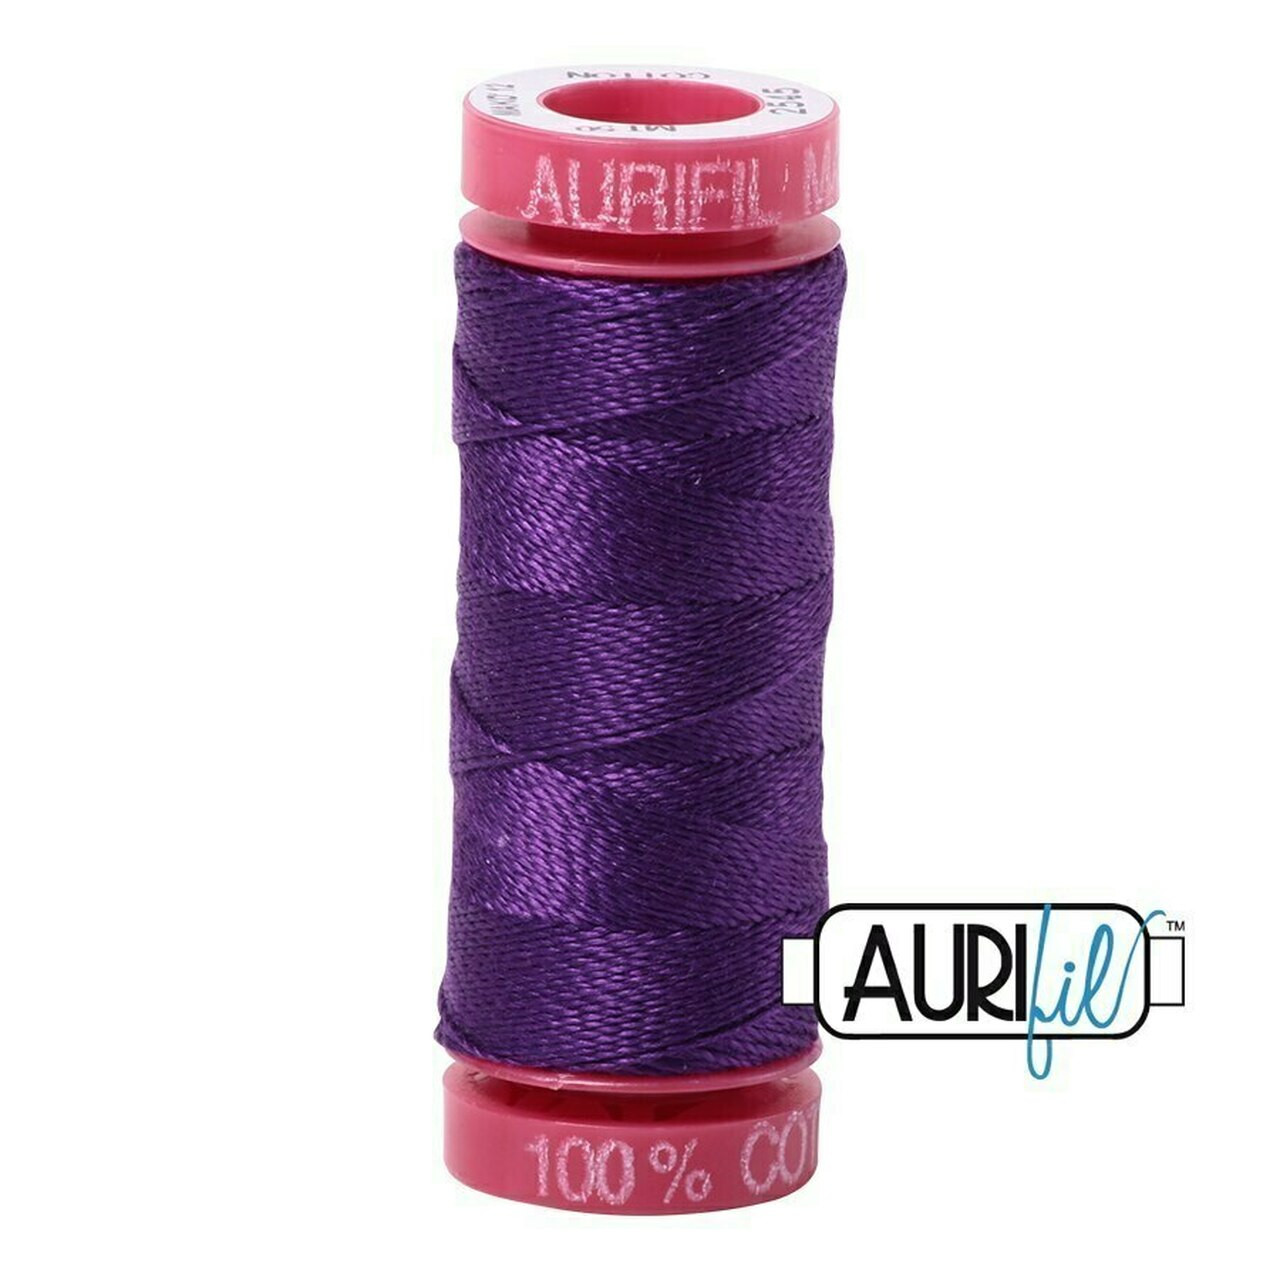 Aurifil 2545 - Medium Purple